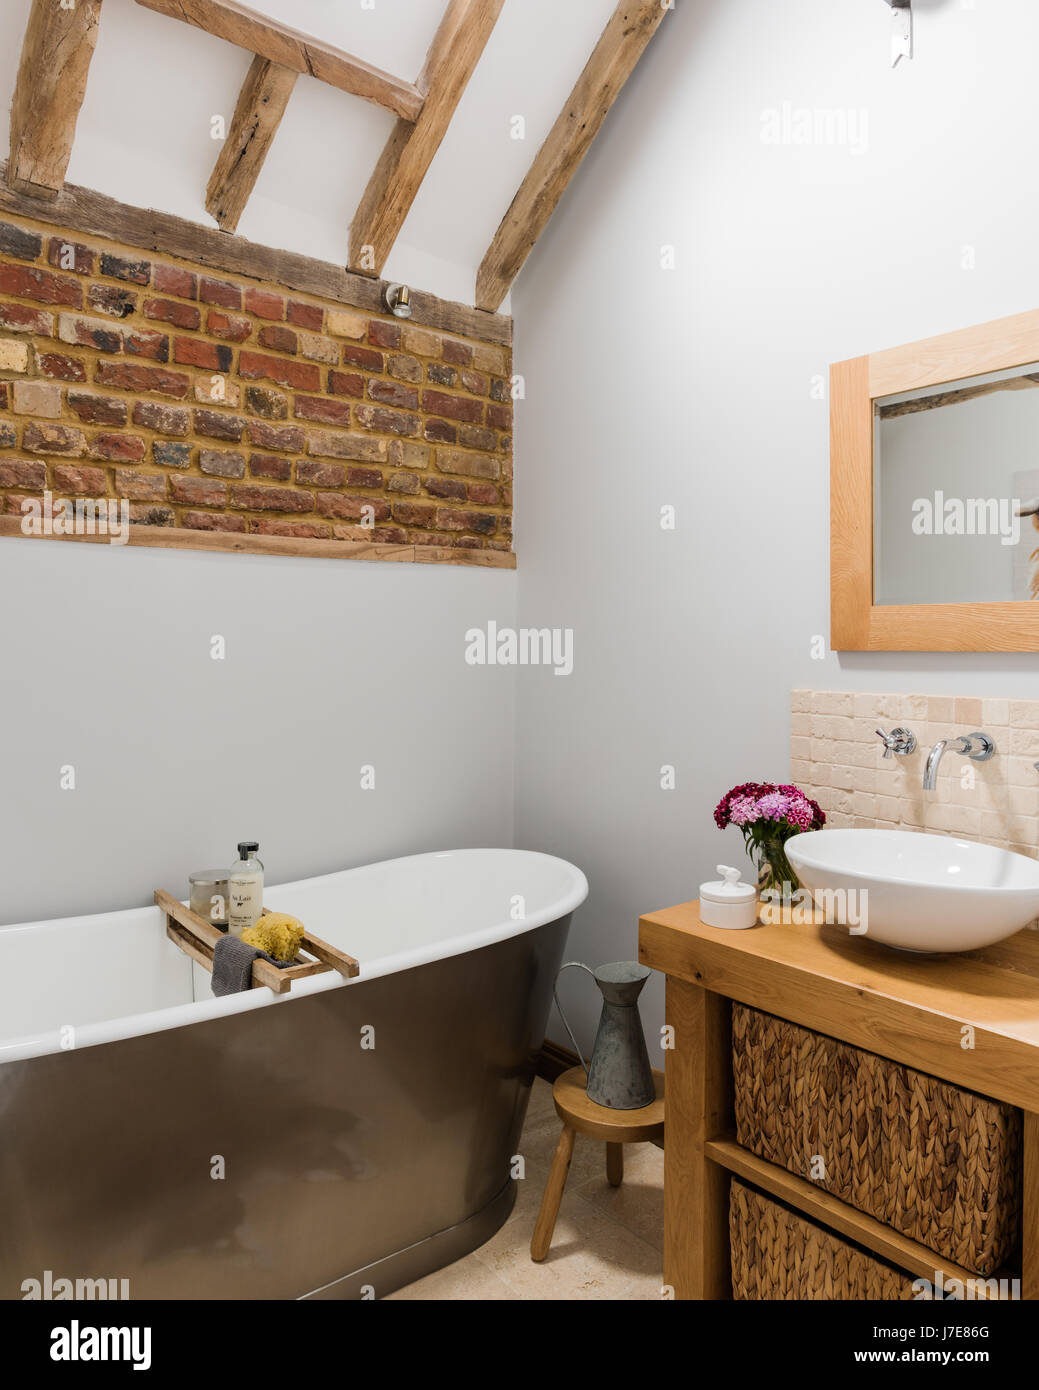 Freistehende Badewanne im rustikalen Badezimmer mit freiliegenden Ziegelwand. Die Wände sind von Albany in hellgrau lackiert. Stockfoto